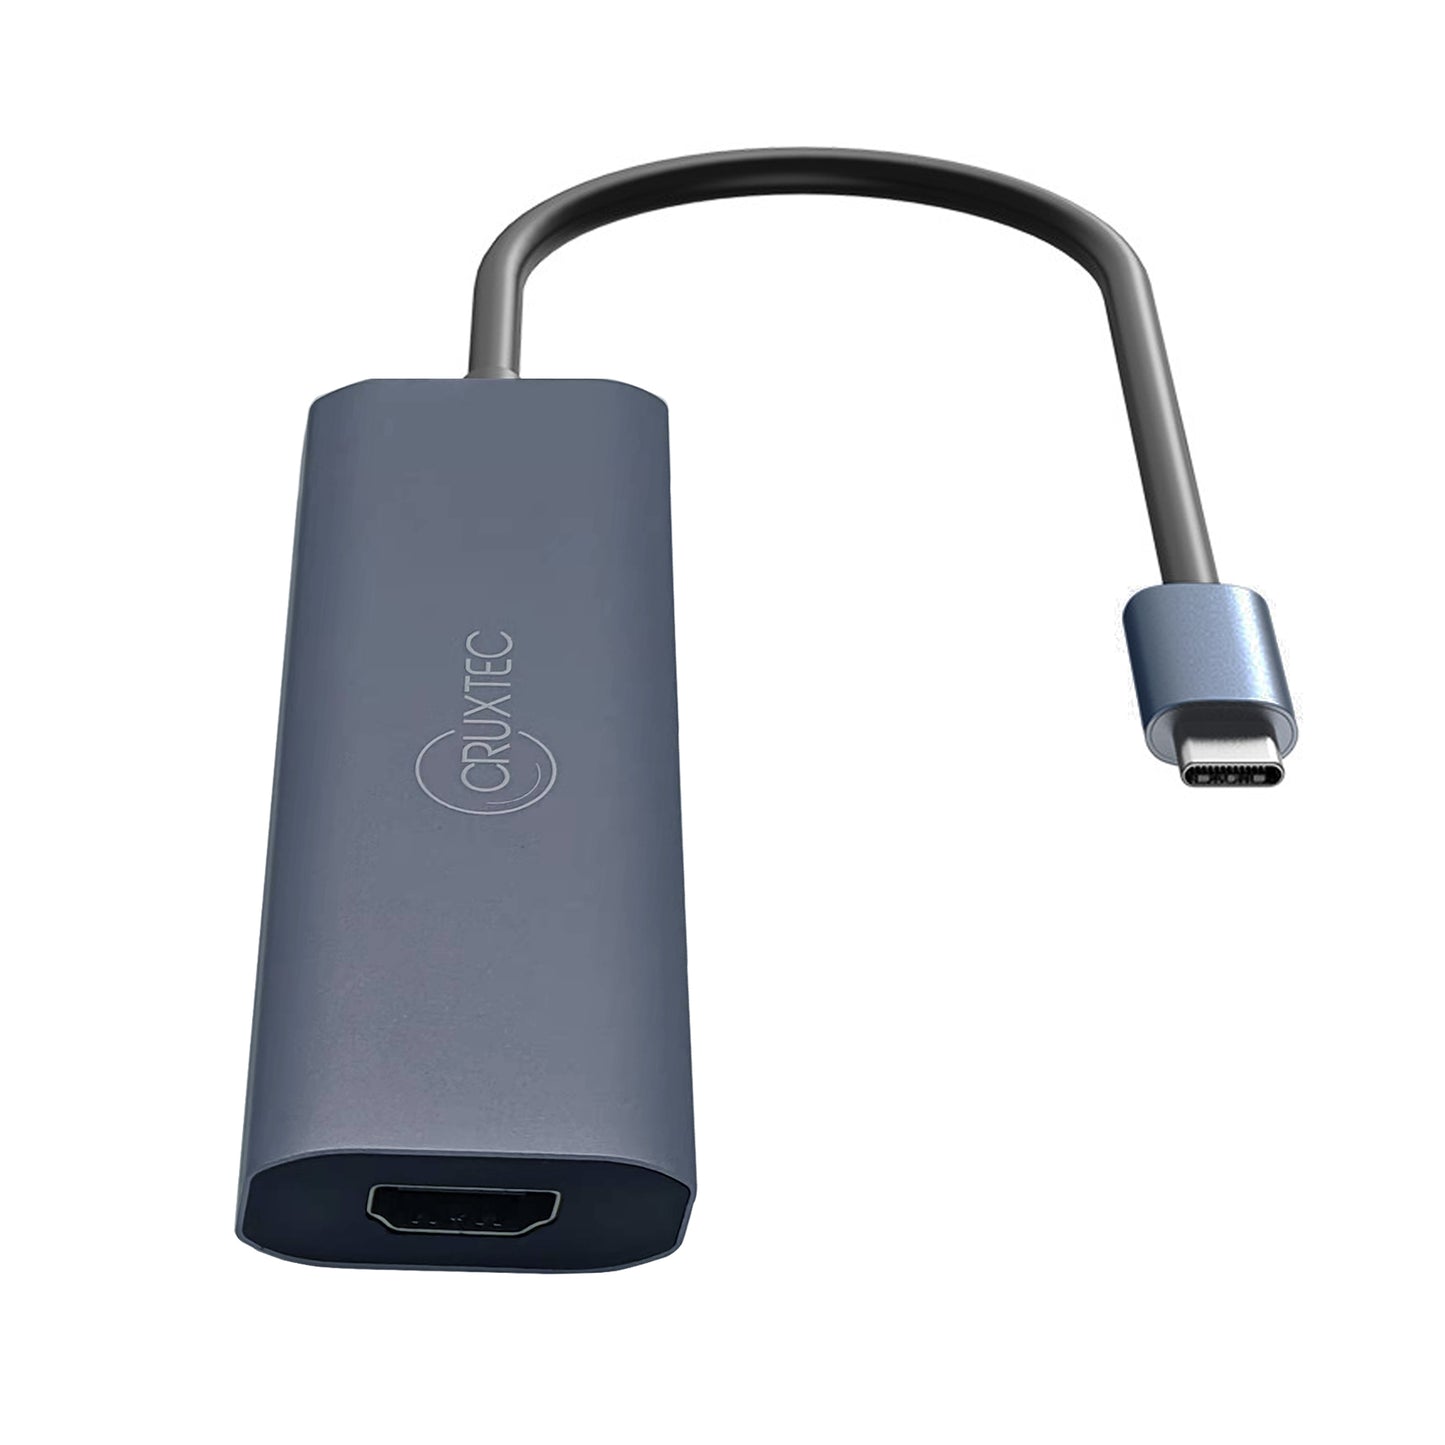 Cruxtec Aluminium Alloy USB-C Mulitport Docking Adapter, 1x 4K HDMI, 3x USB3.0, 1x USB-C 100W PD